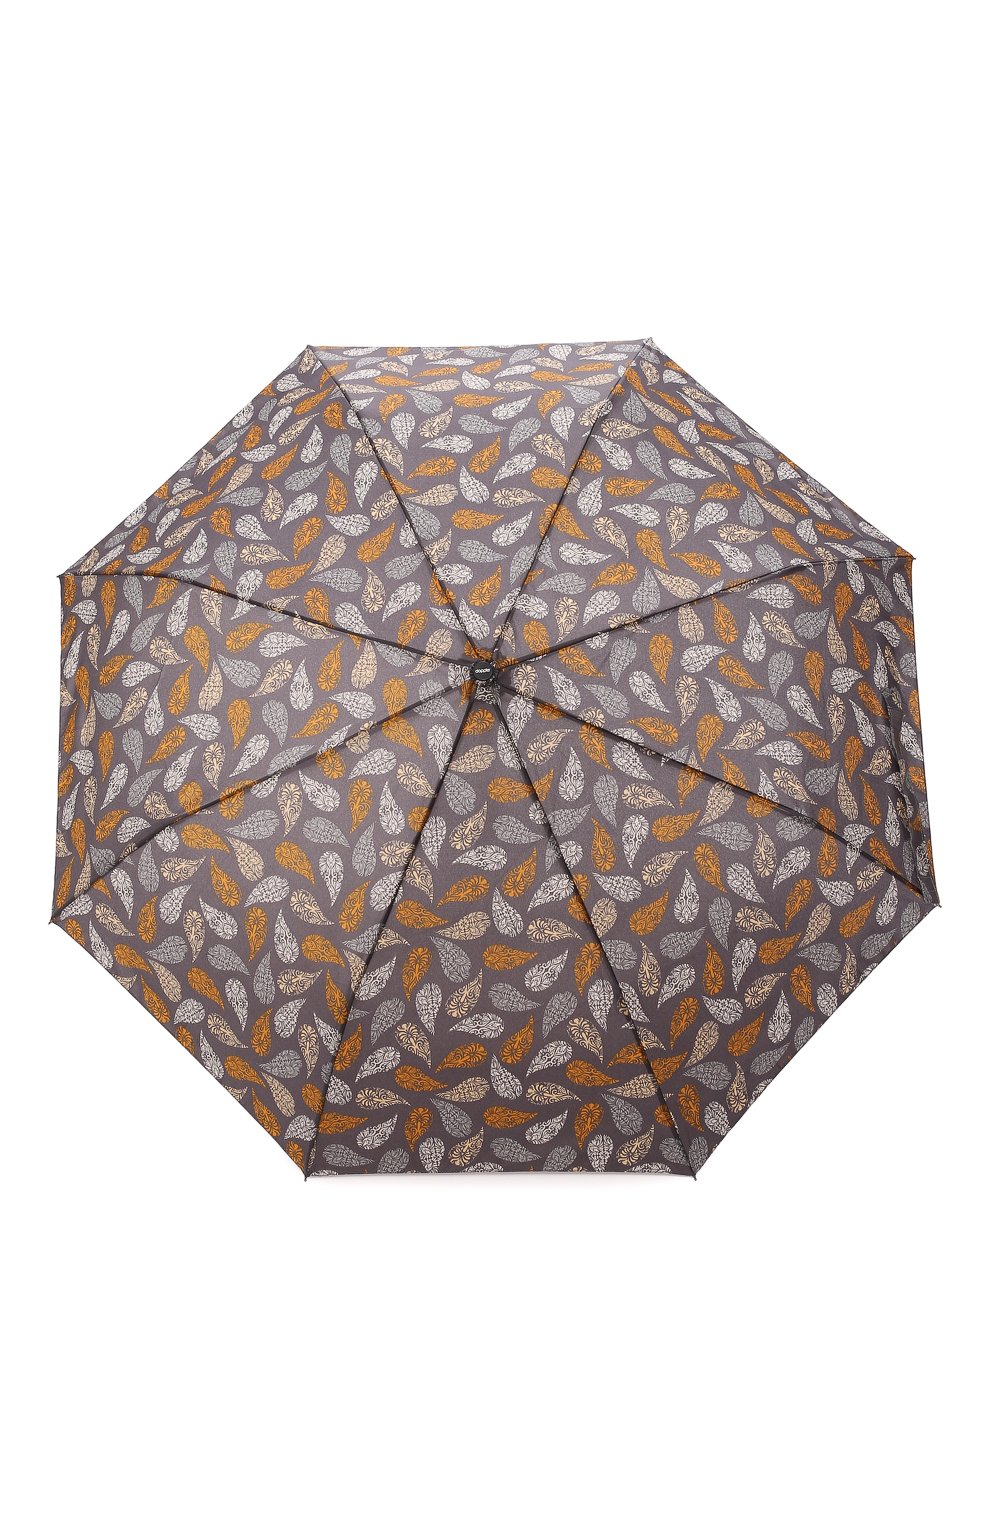 Женский складной зонт DOPPLER серого цвета, арт. 7441465 J 03 | Фото 1 (Материал: Текстиль, Синтетический материал)